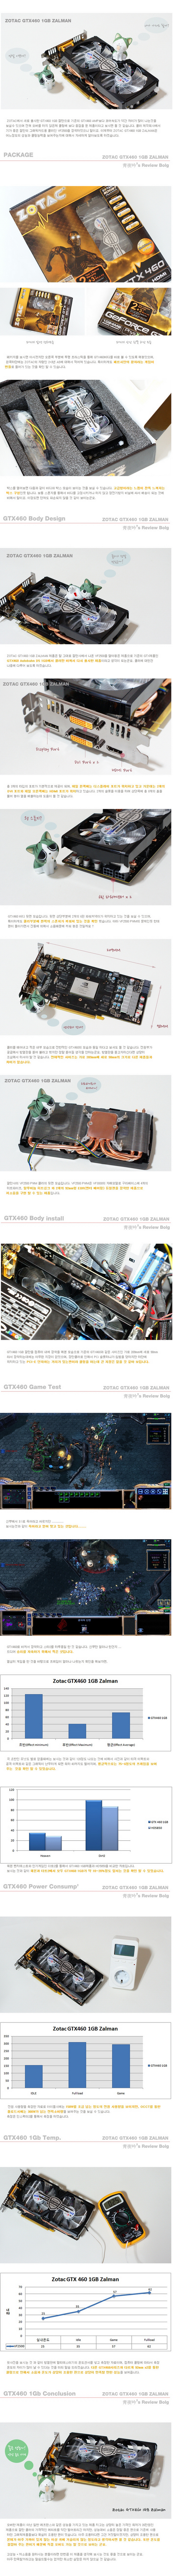 ZOTAC GTX460 1GB ZALMAN